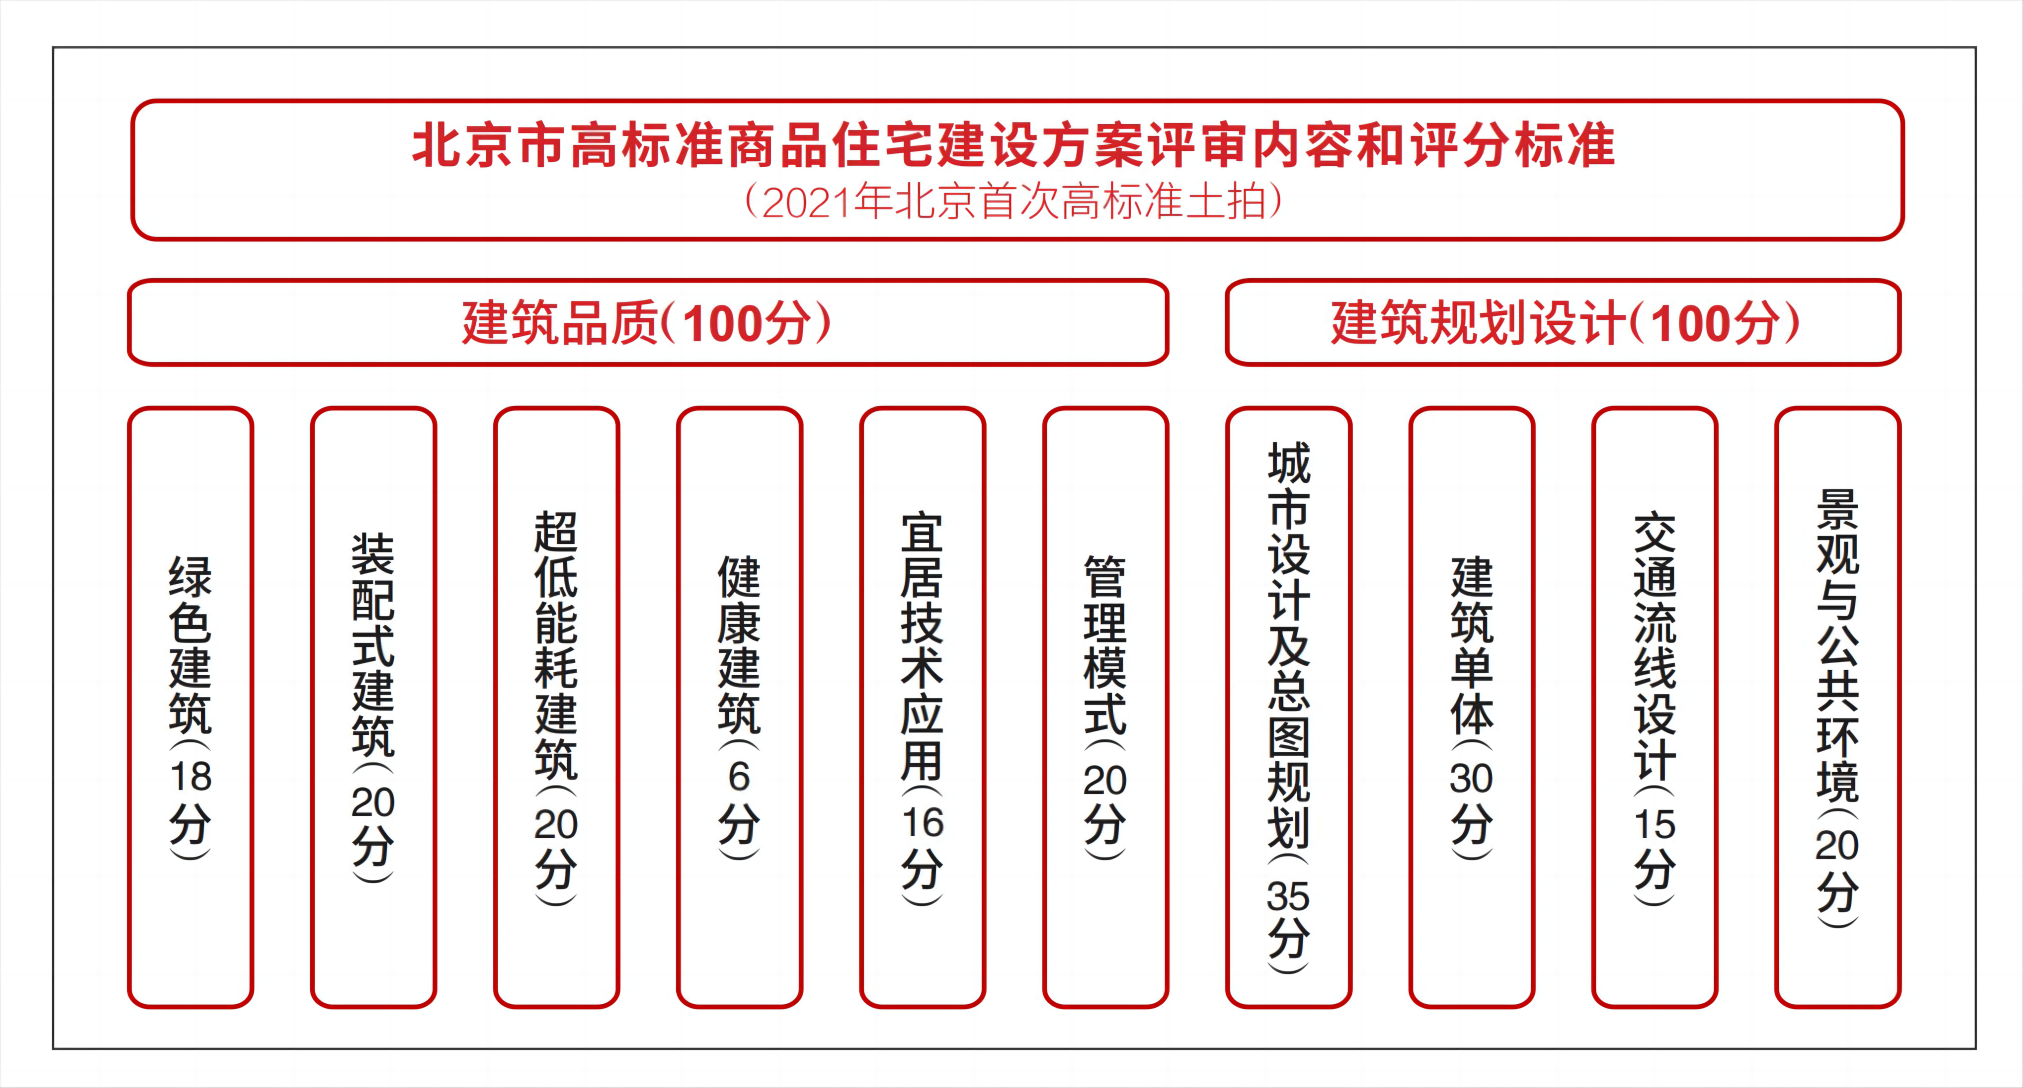 北京市高标准商品住宅建设方案评审内容和评分标准.png